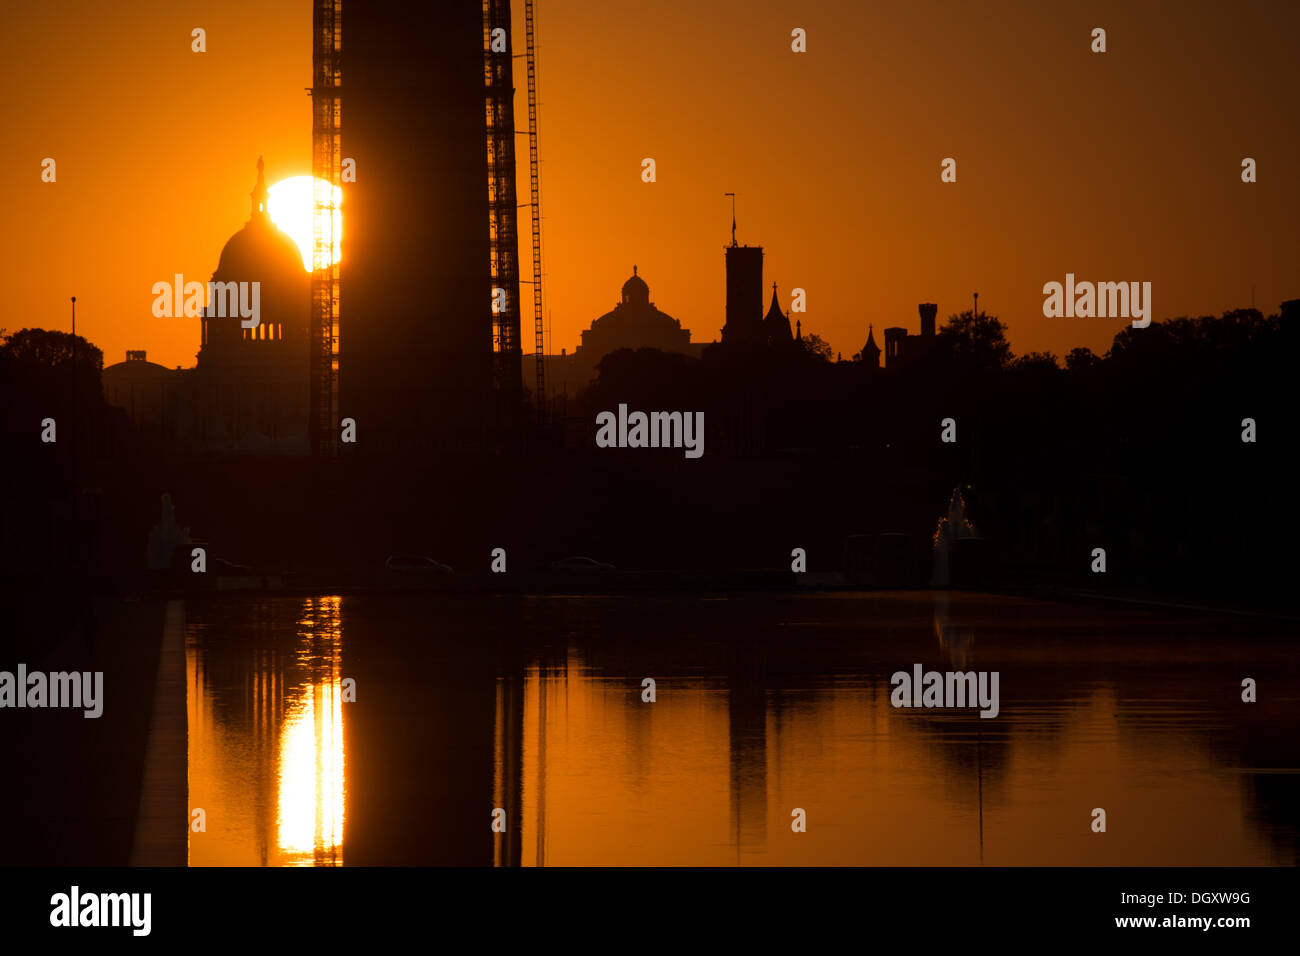 WASHINGTON DC, USA - Die aufgehende Sonne sehr niedrig am Horizont hinter dem Washington Monument und einen reflektierenden Pool in Washington DC. Stockfoto